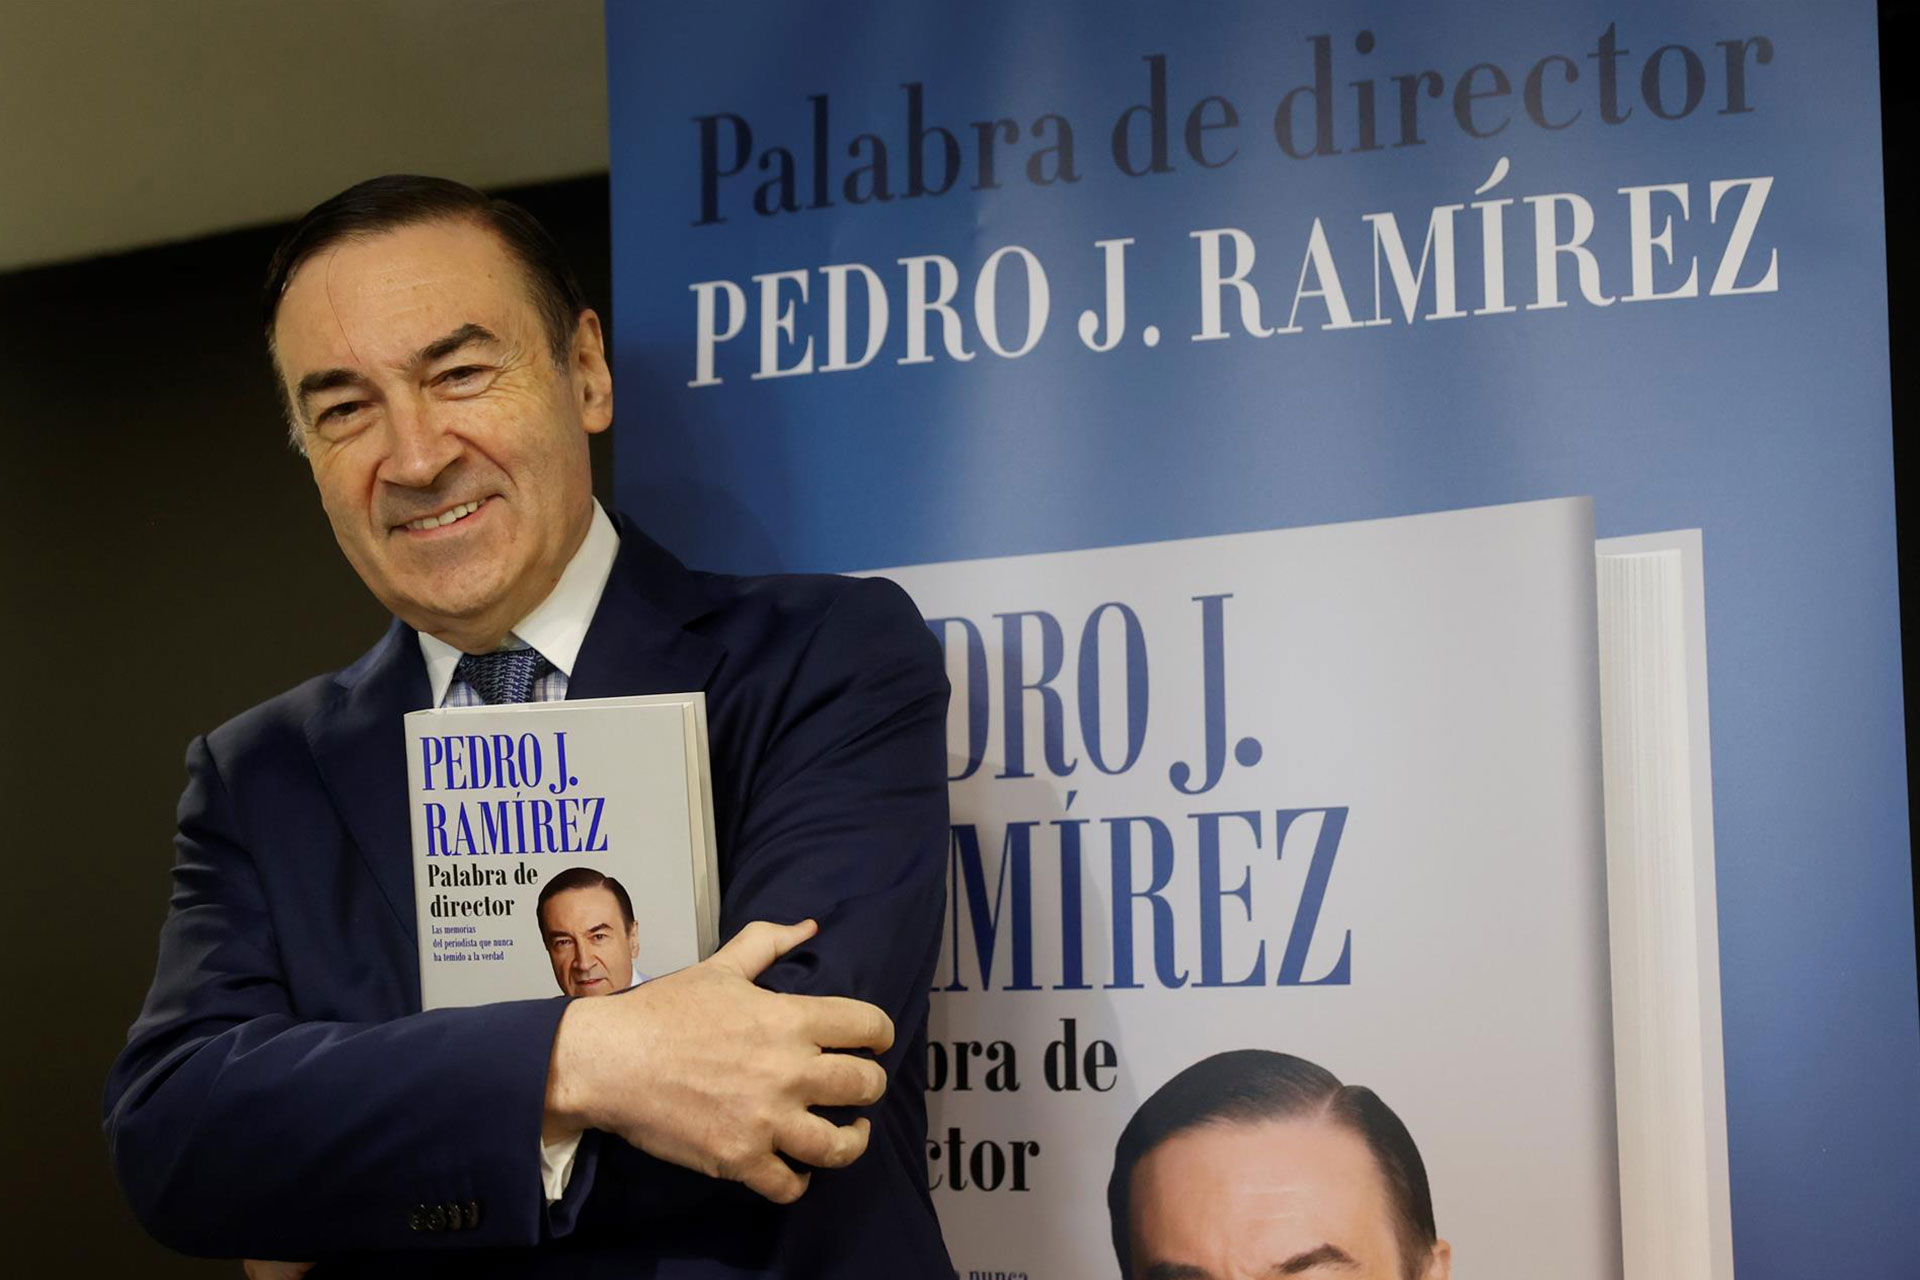 Pedro J. Ramírez: política, intrigas y cintas de vídeo